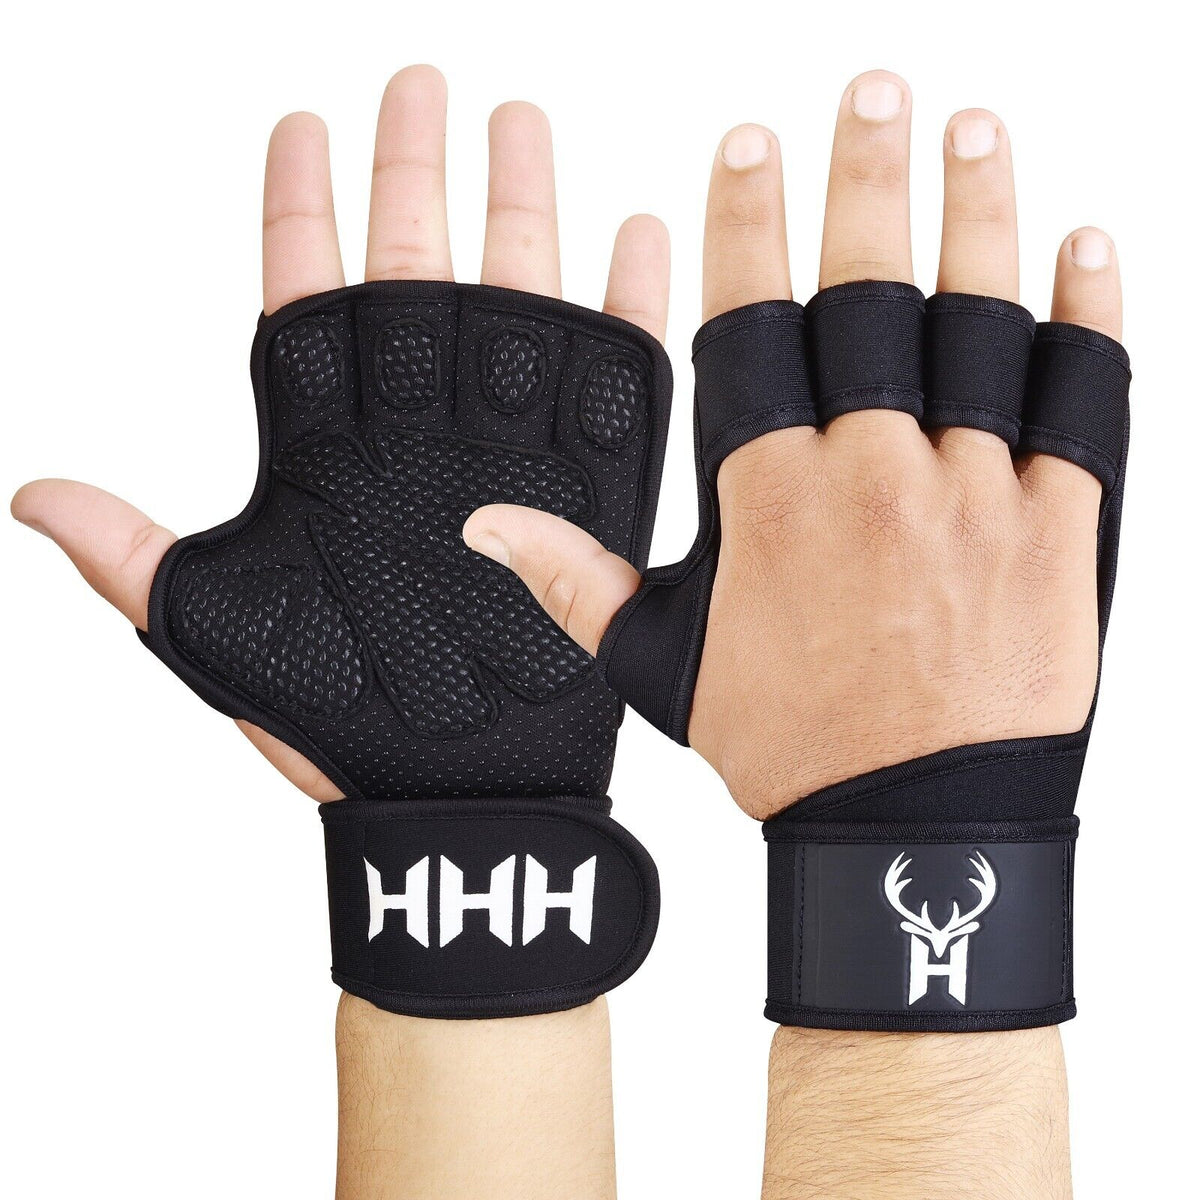 Gym Gloves Wrist Support 